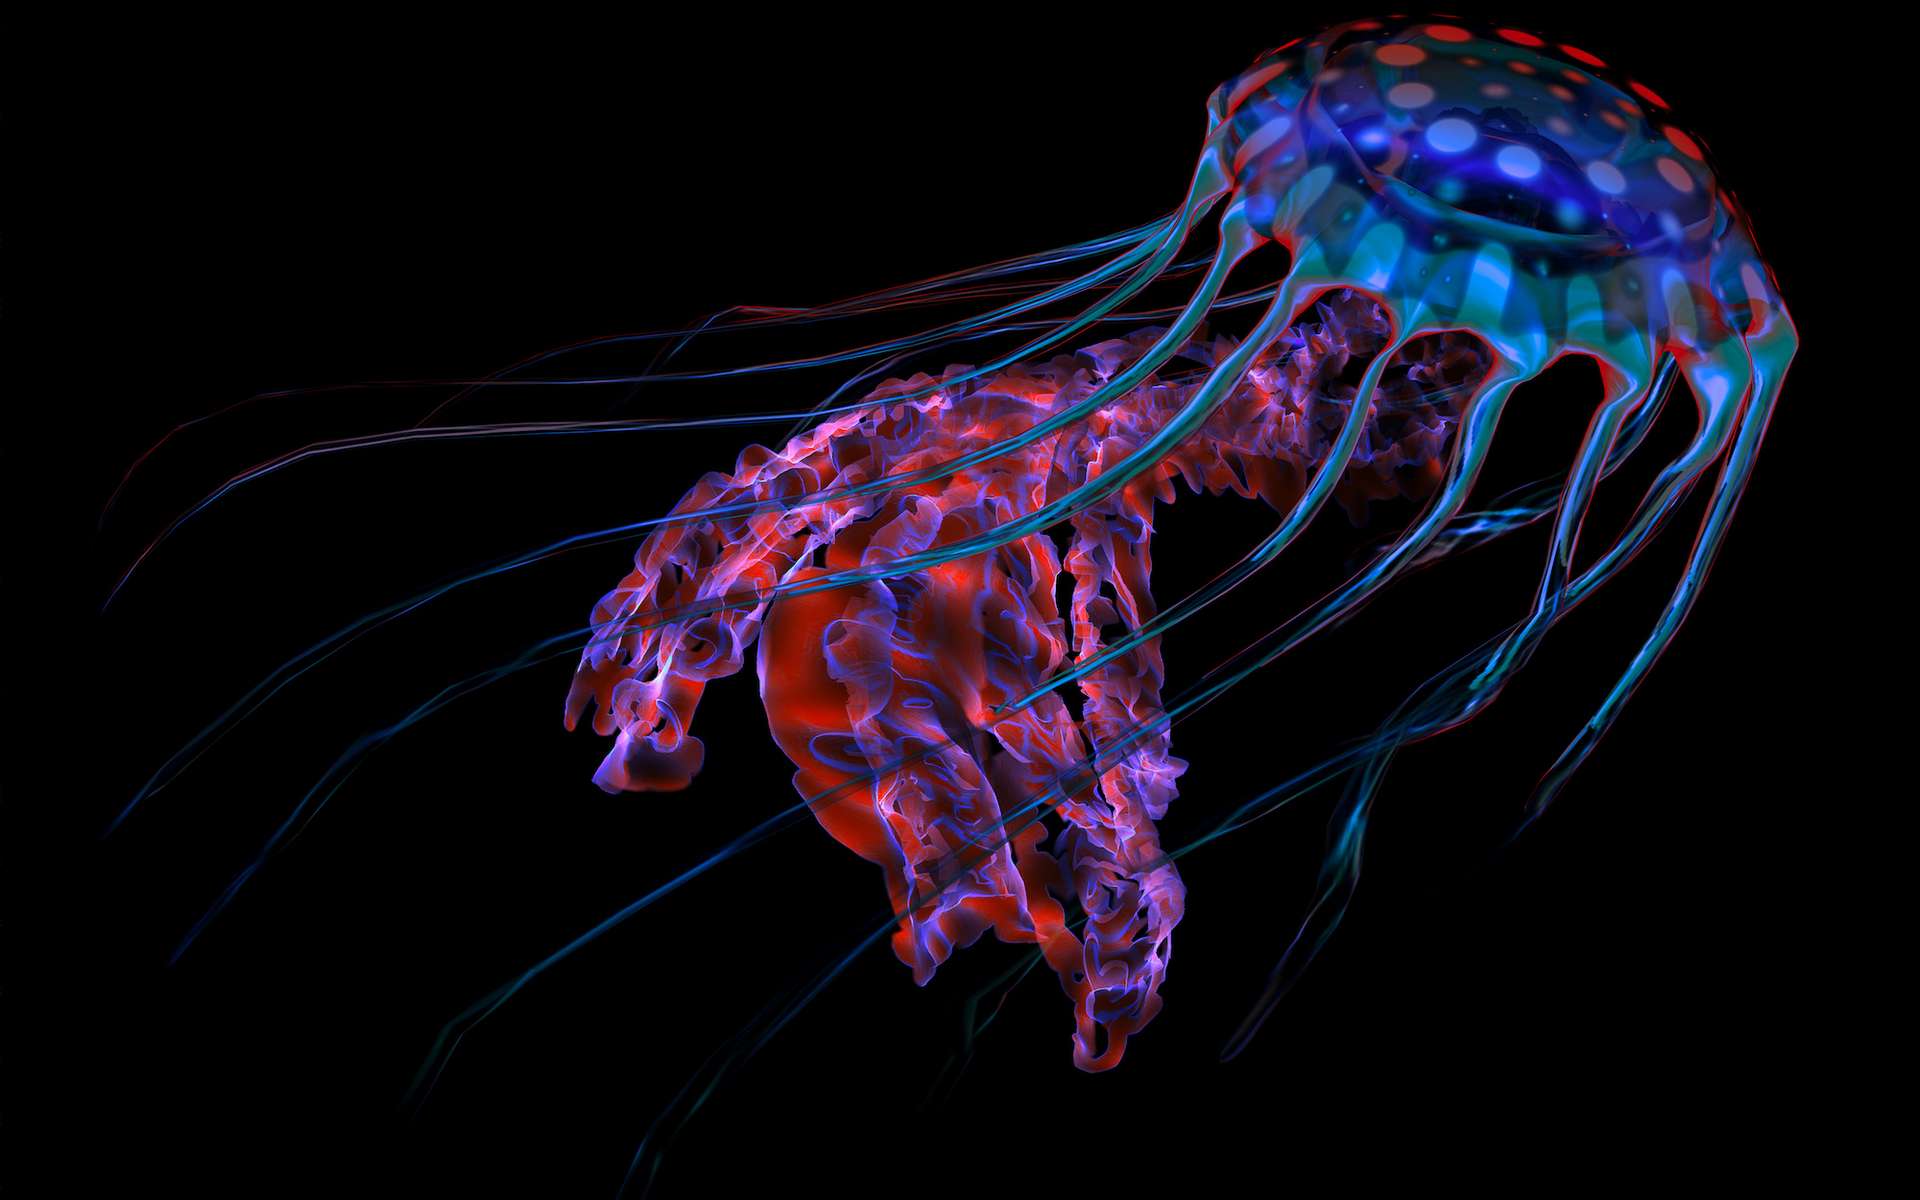 La bioluminescence serait apparue chez les animaux il y a 540 millions d'années !